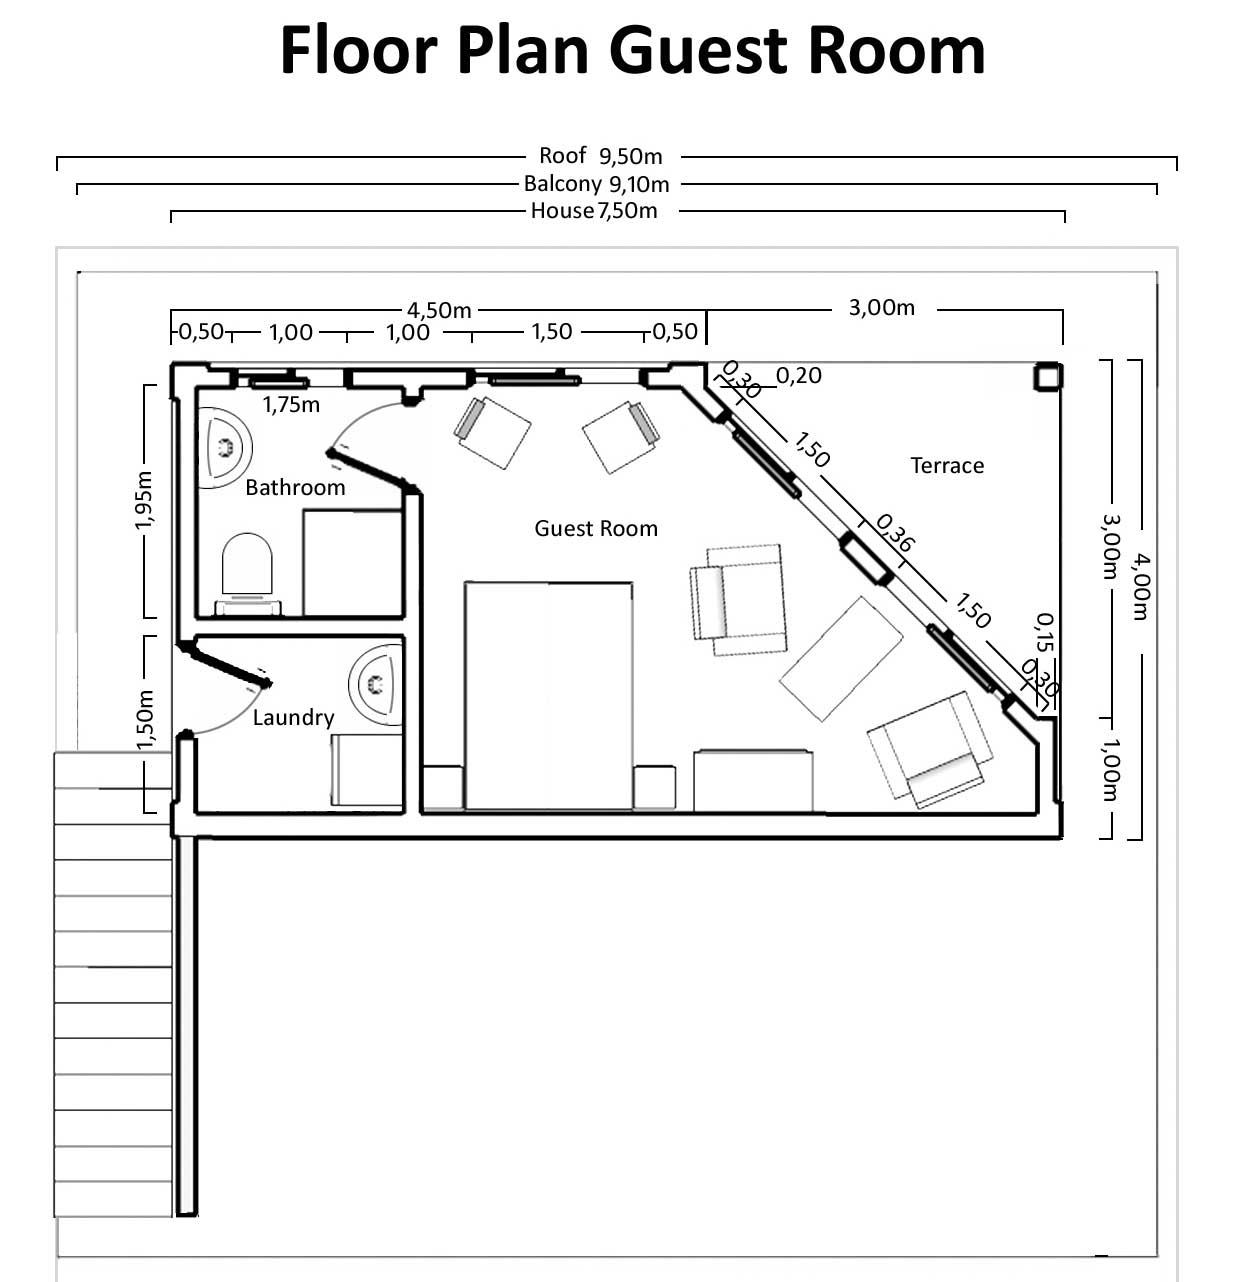 floor plan of guest room